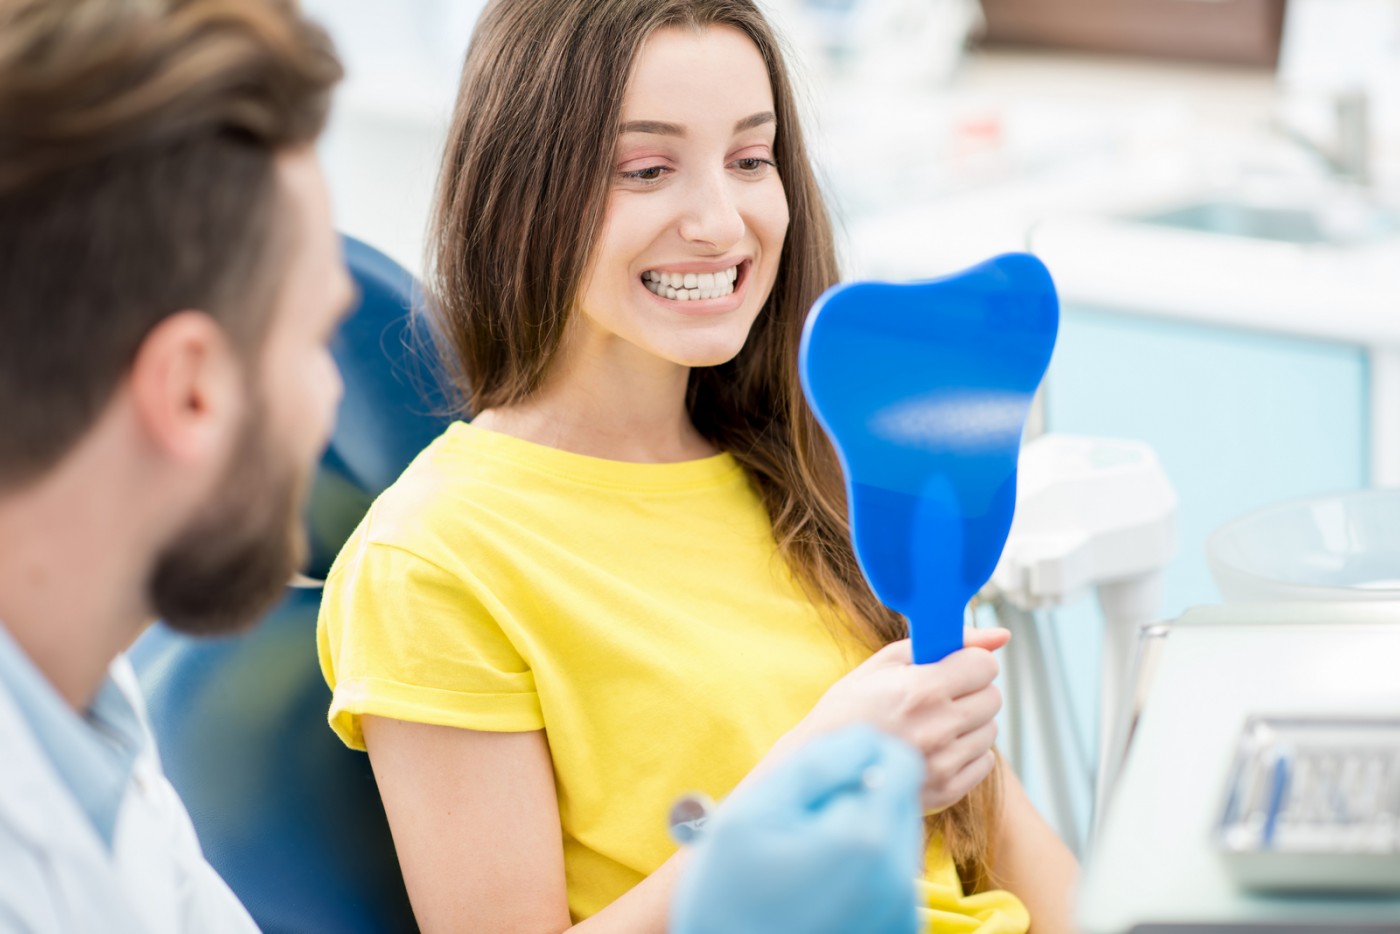 Procedura de implant dentar într-o zi, la SteliDental, te va face să experimentezi beneficiile unui